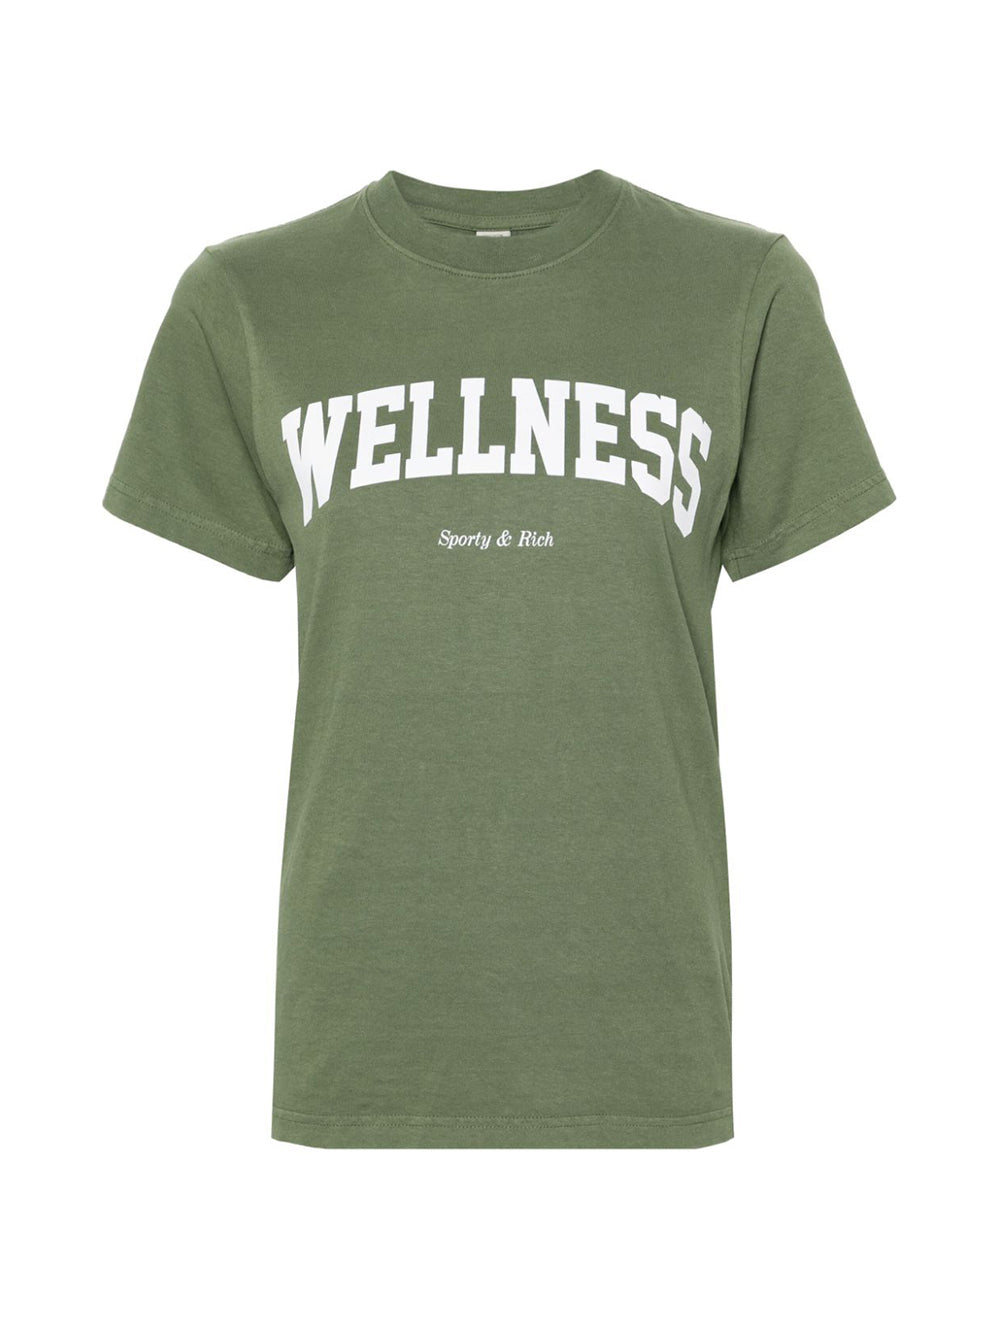 T-shirt Wellness Ivy